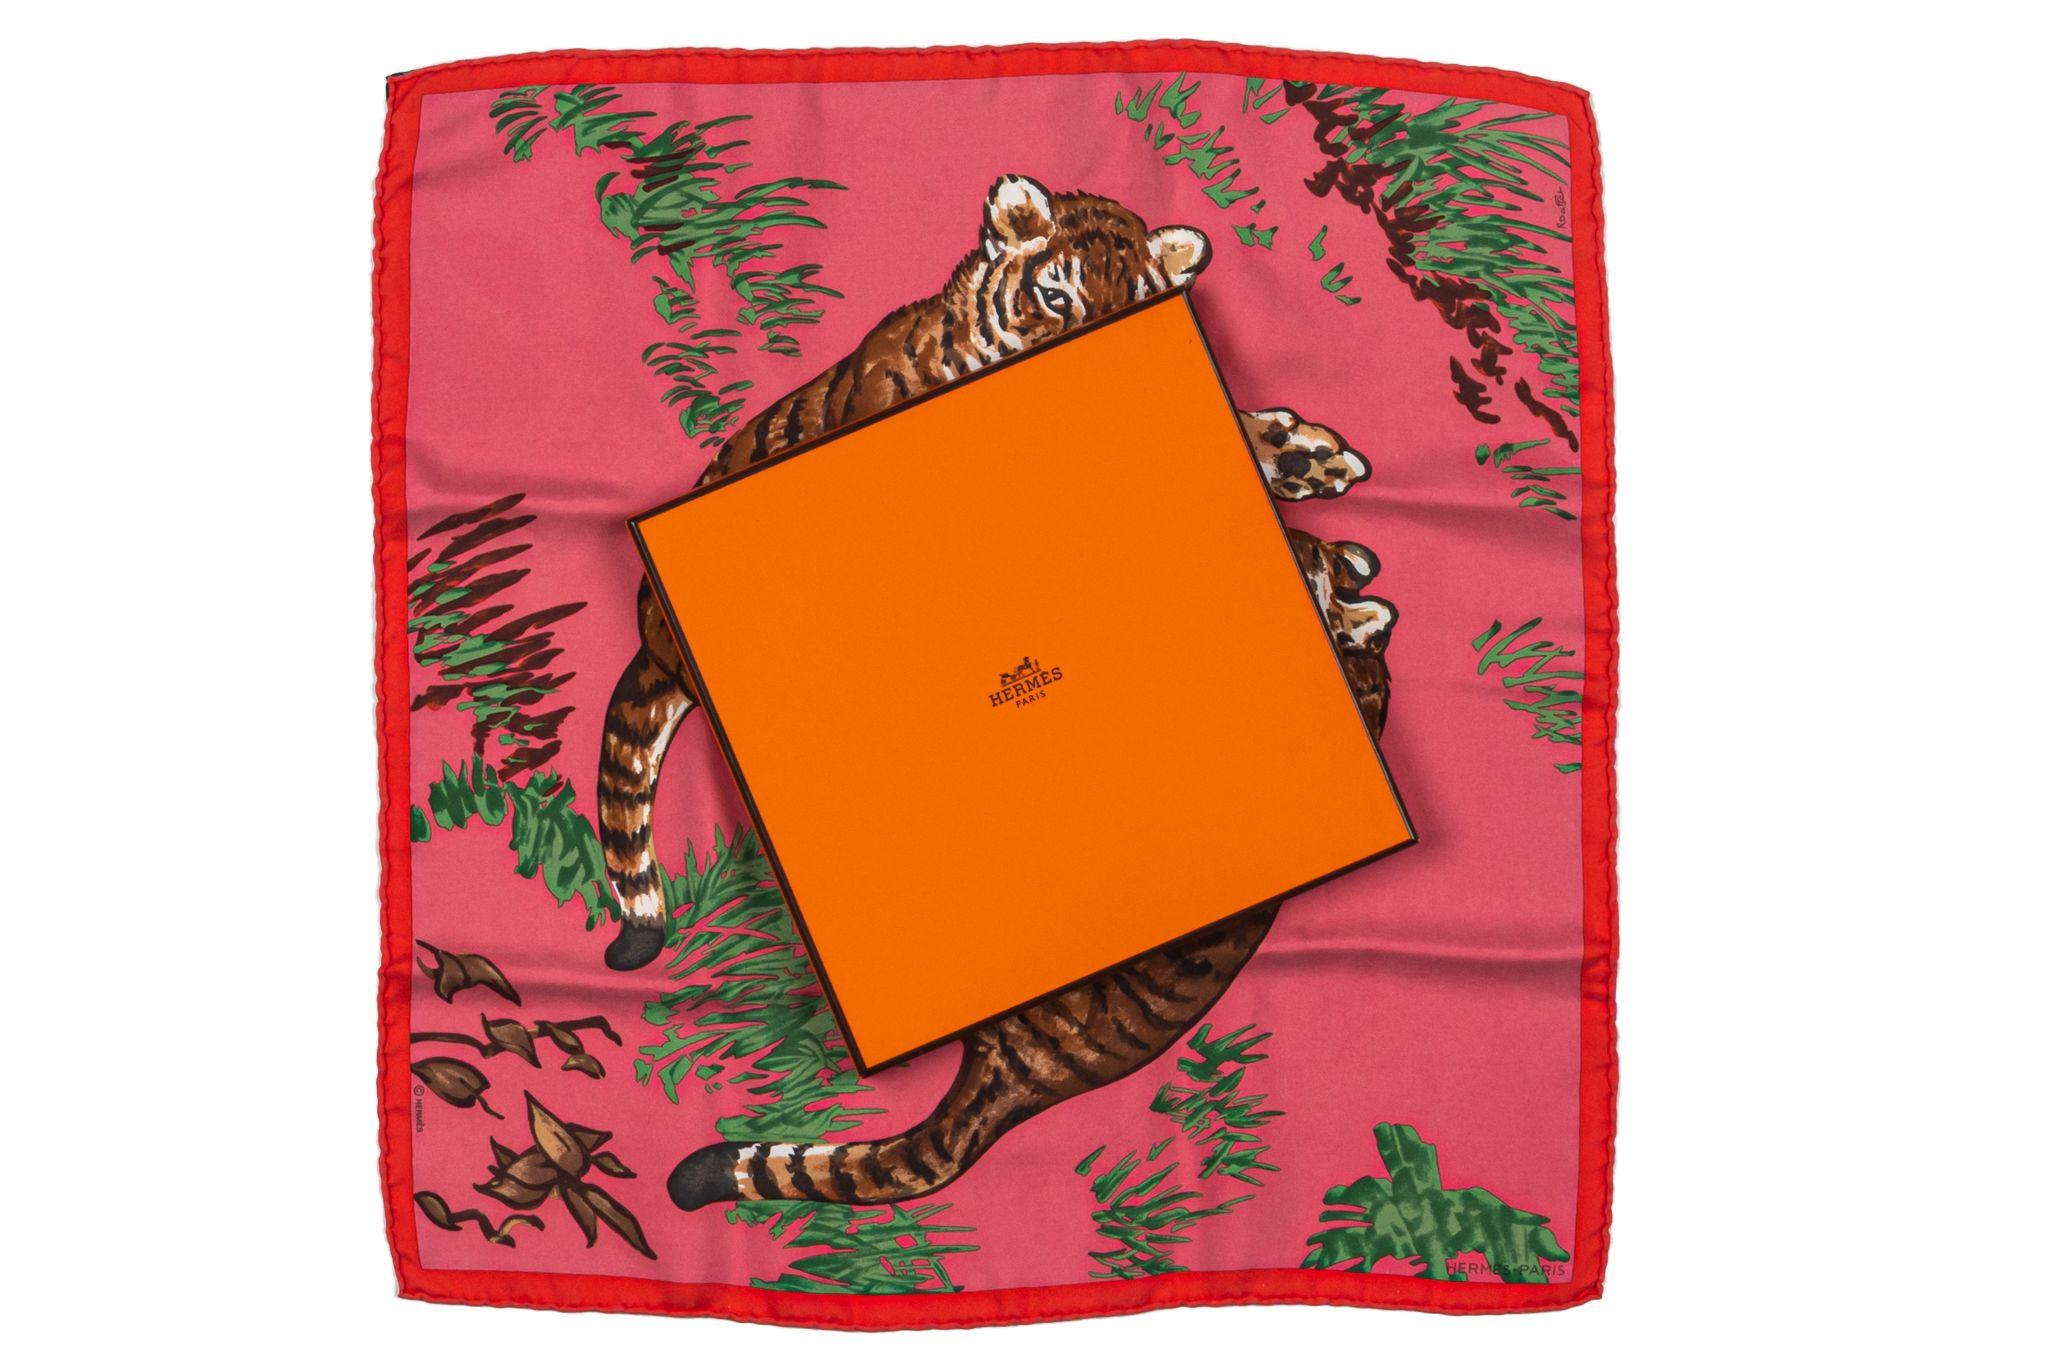 Foulard en soie Hermès Tigers en excellent état. Fond rose avec bordure rouge représentant de grands tigres bondissants. Bords roulés. Livré avec sa boîte d'origine.